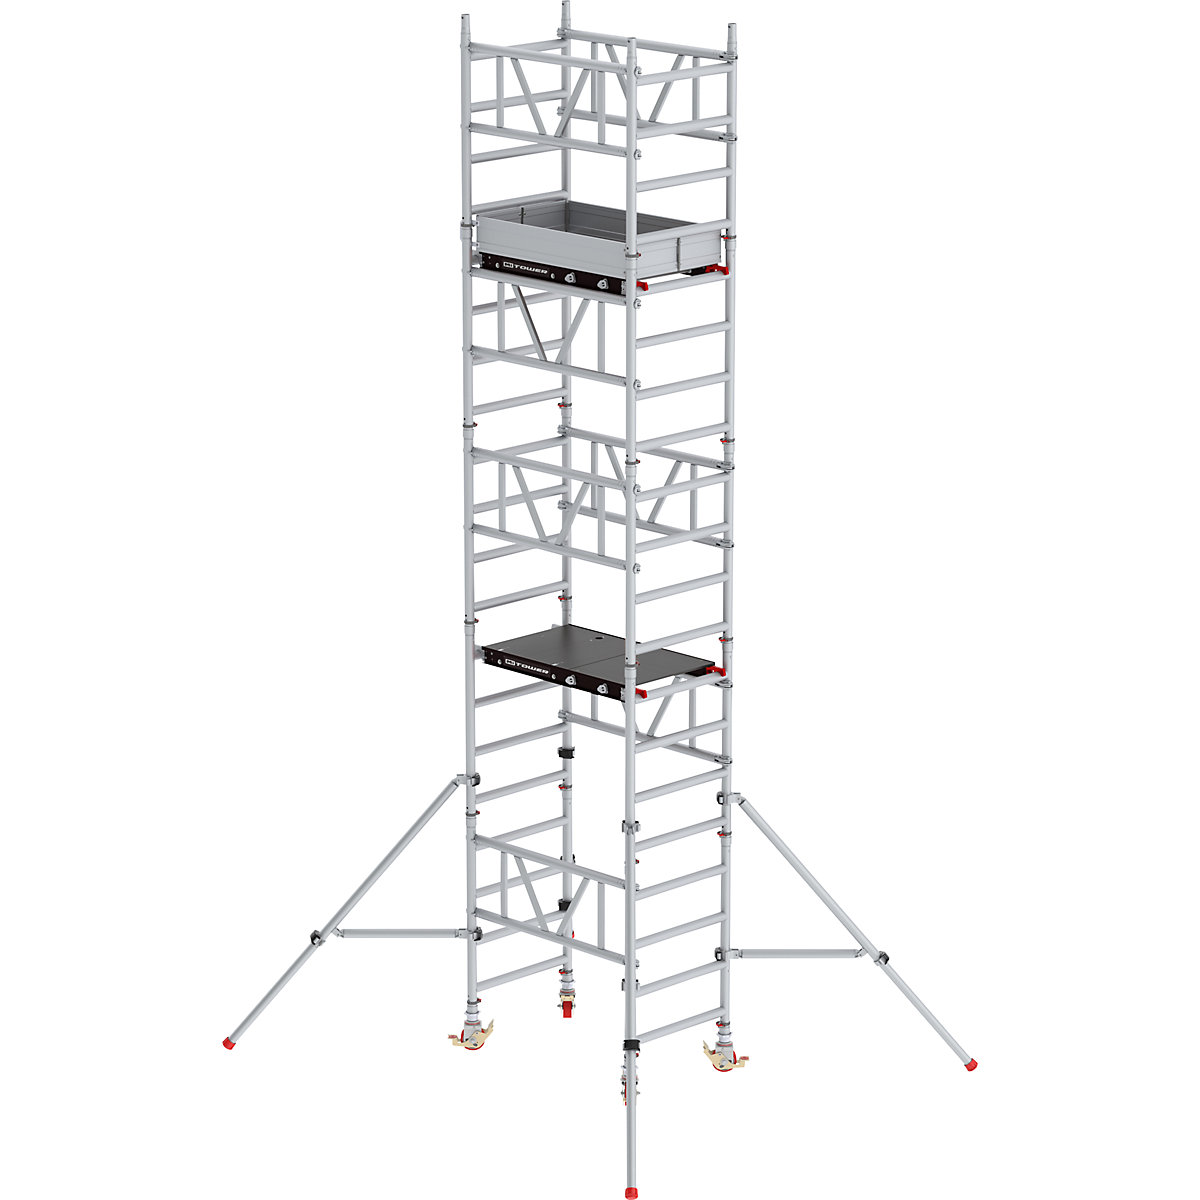 Schnellbau-Fahrgerüst MiTOWER Standard Altrex, Fiber-Deck®-Plattform, LxB 1200 x 750 mm, Arbeitshöhe 6 m